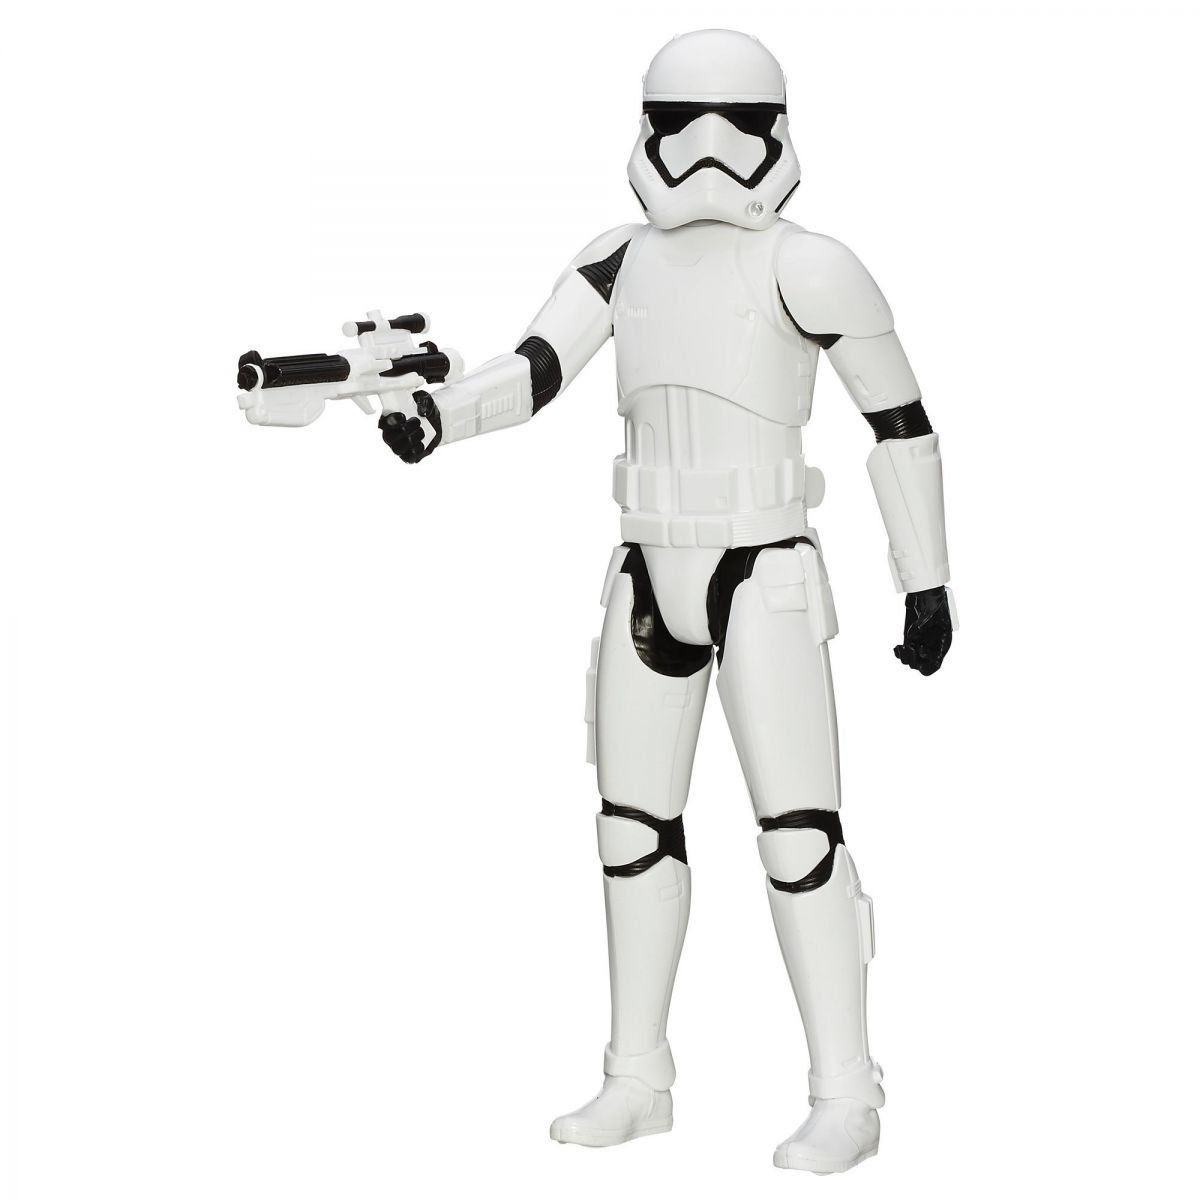 Star Wars Epsódio VII: First Order Stormtrooper - Hasbro